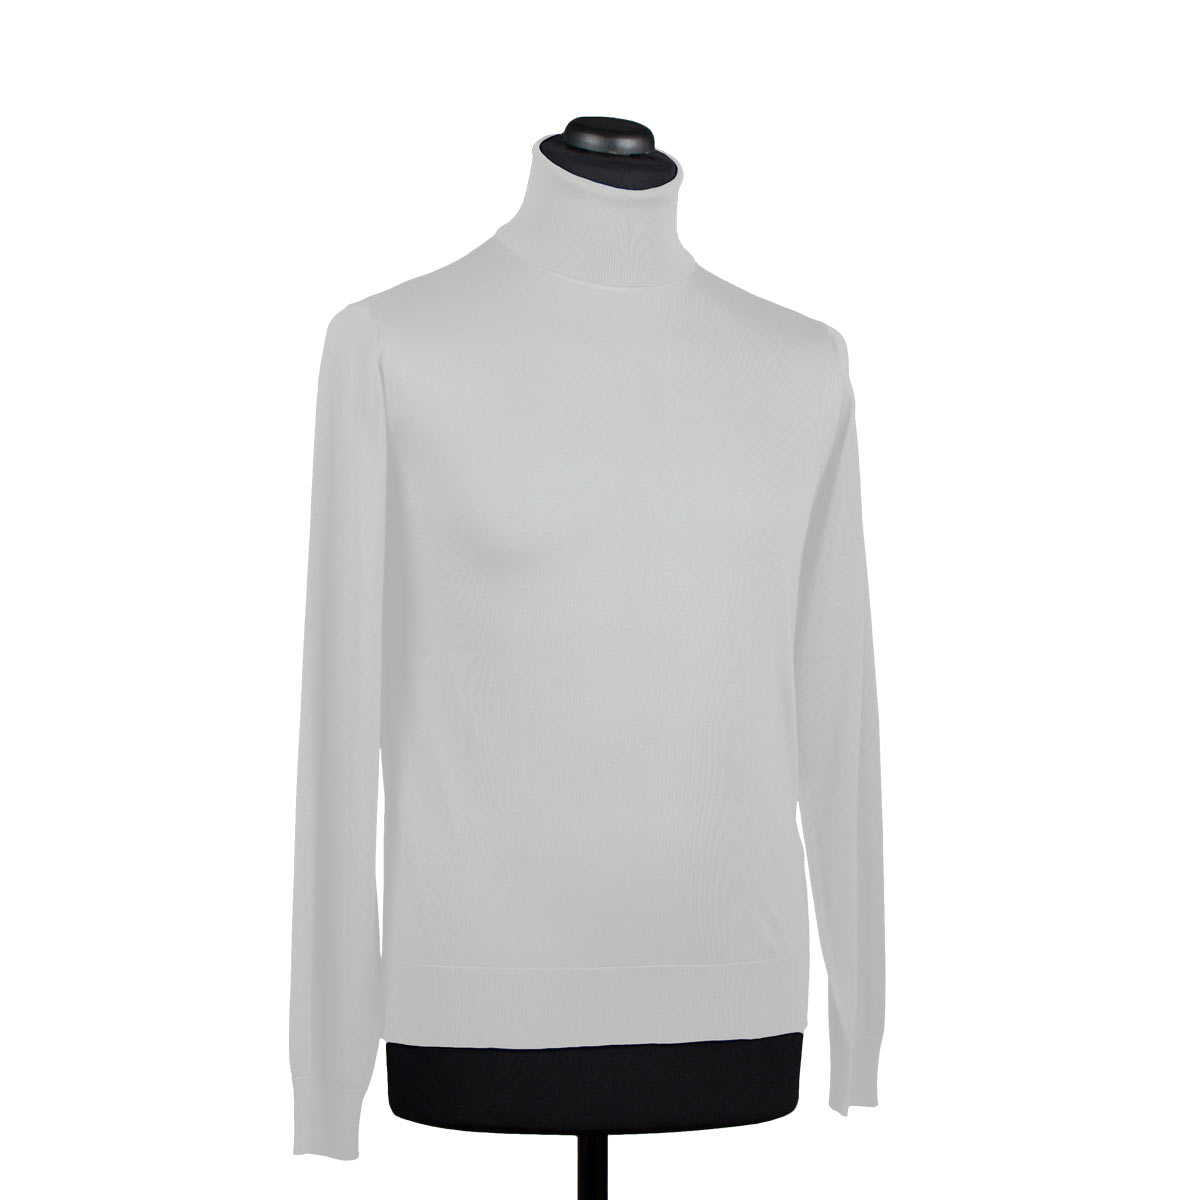 Silk turtleneck sweater for men, white - Di Franco Moda Italiana